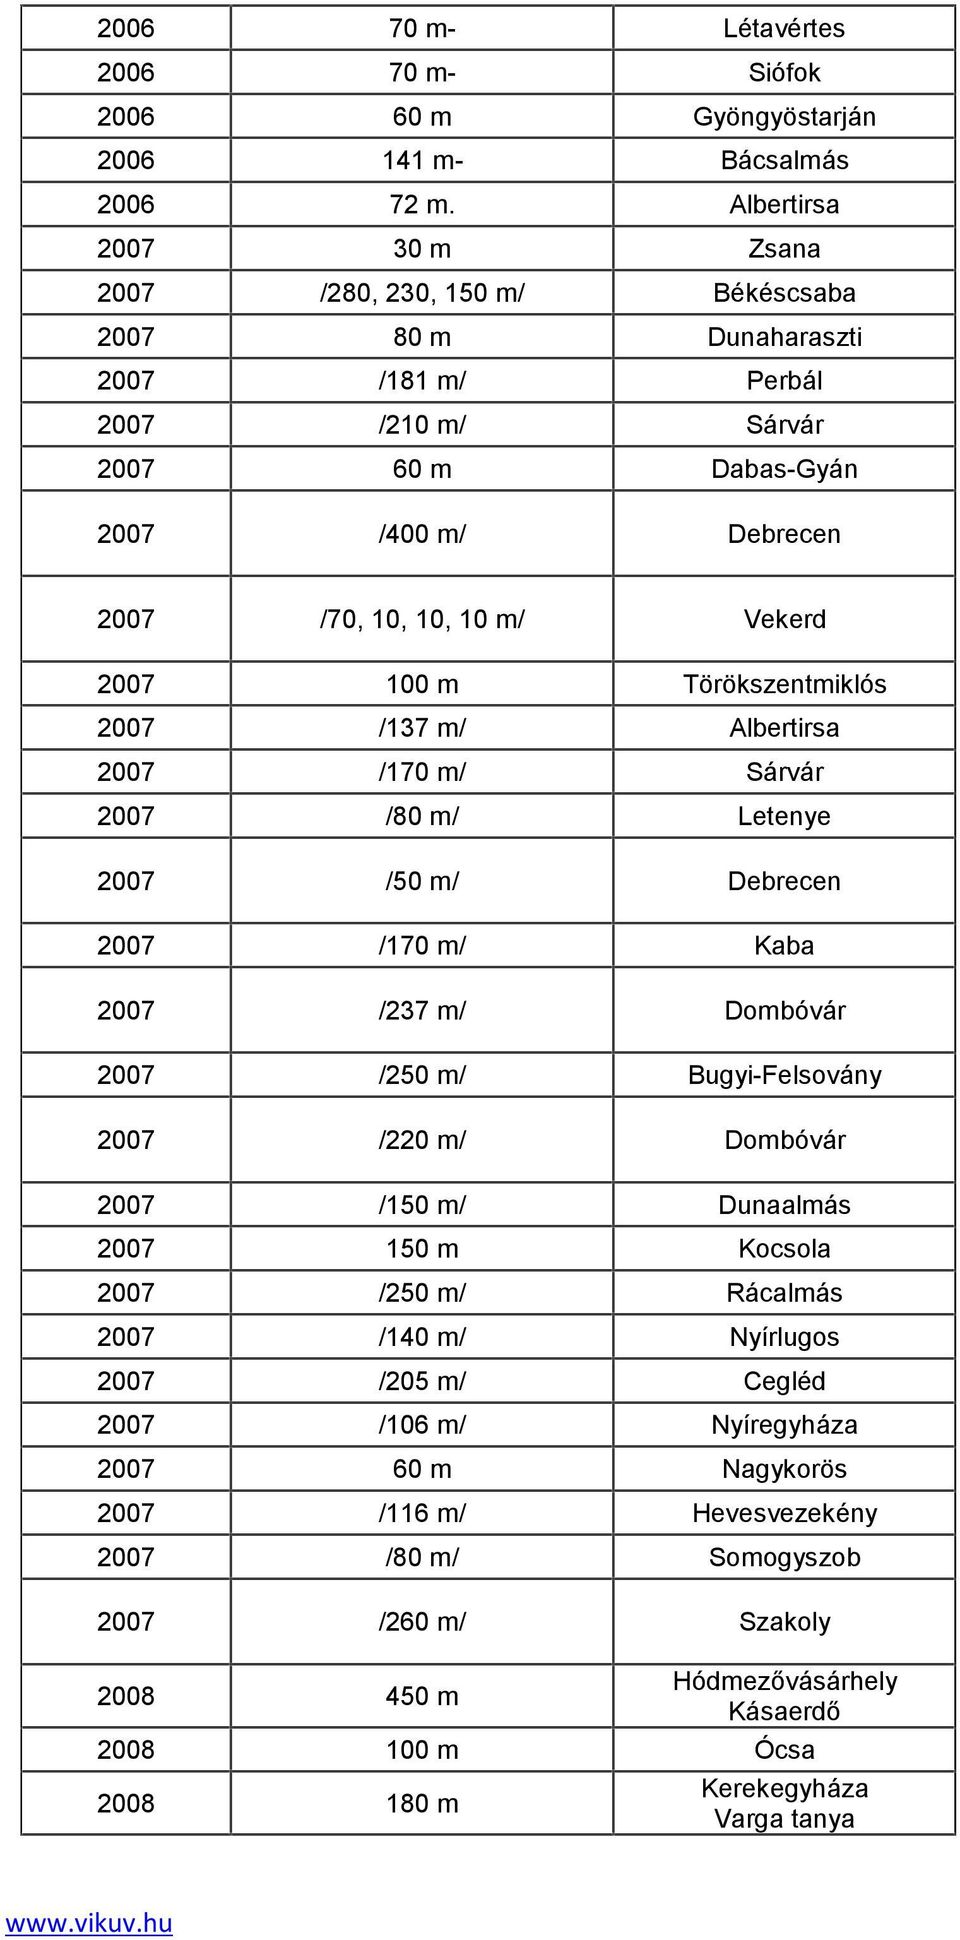 2007 100 m Törökszentmiklós 2007 /137 m/ Albertirsa 2007 /170 m/ Sárvár 2007 /80 m/ Letenye 2007 /50 m/ Debrecen 2007 /170 m/ Kaba 2007 /237 m/ Dombóvár 2007 /250 m/ Bugyi-Felsovány 2007 /220 m/